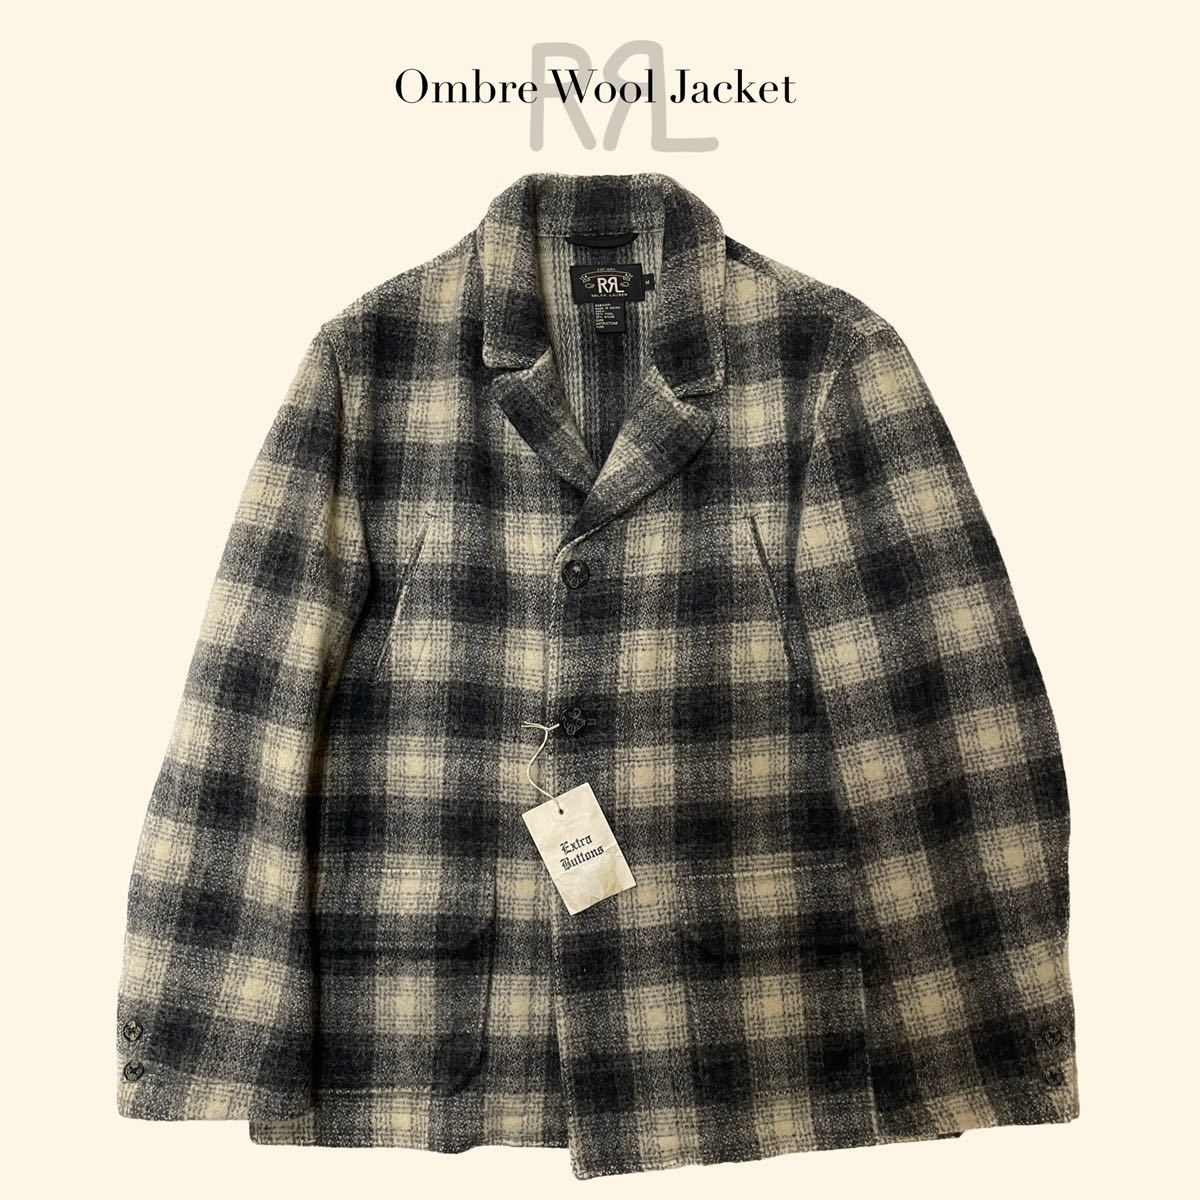 【傑作】RRL “Ombre Wool Jacket” M オンブレ ジャケット コート ヴィンテージ ウール Ralph Lauren